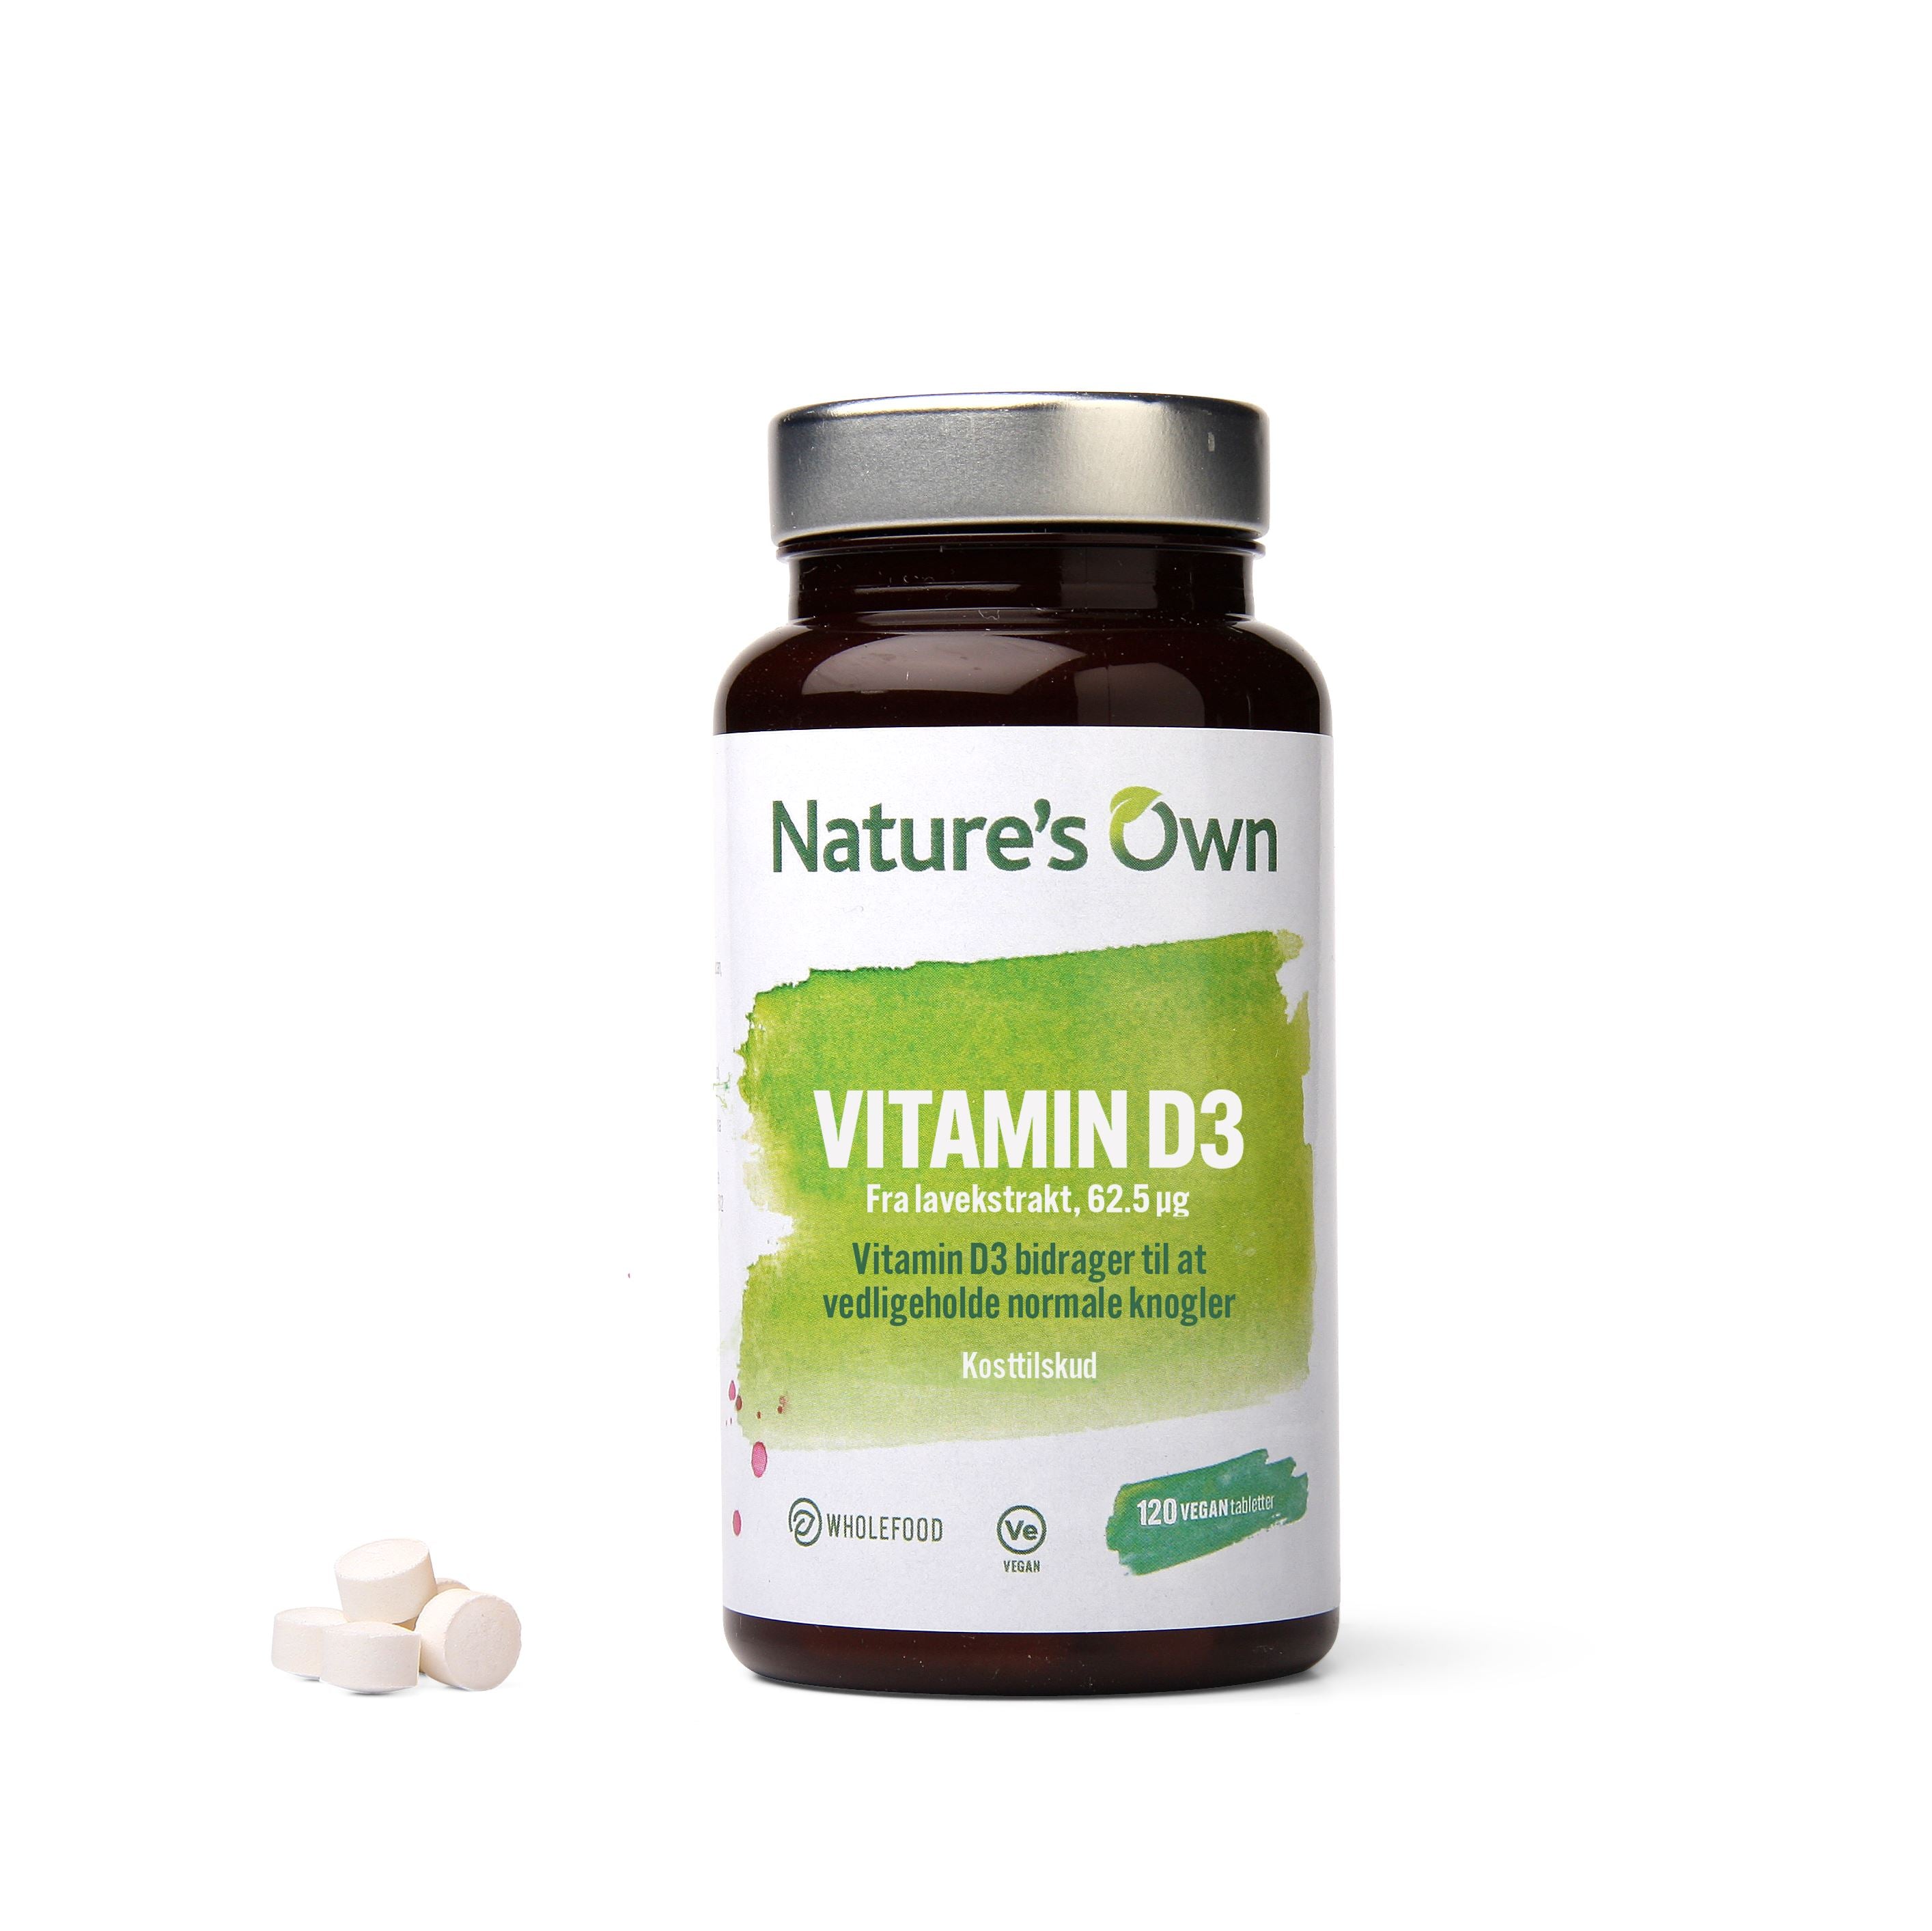 Billede af Natures Own - Nature's Own Vitamin D3 Vegan Udvundet Af Lavekstrakt - 120 Stk